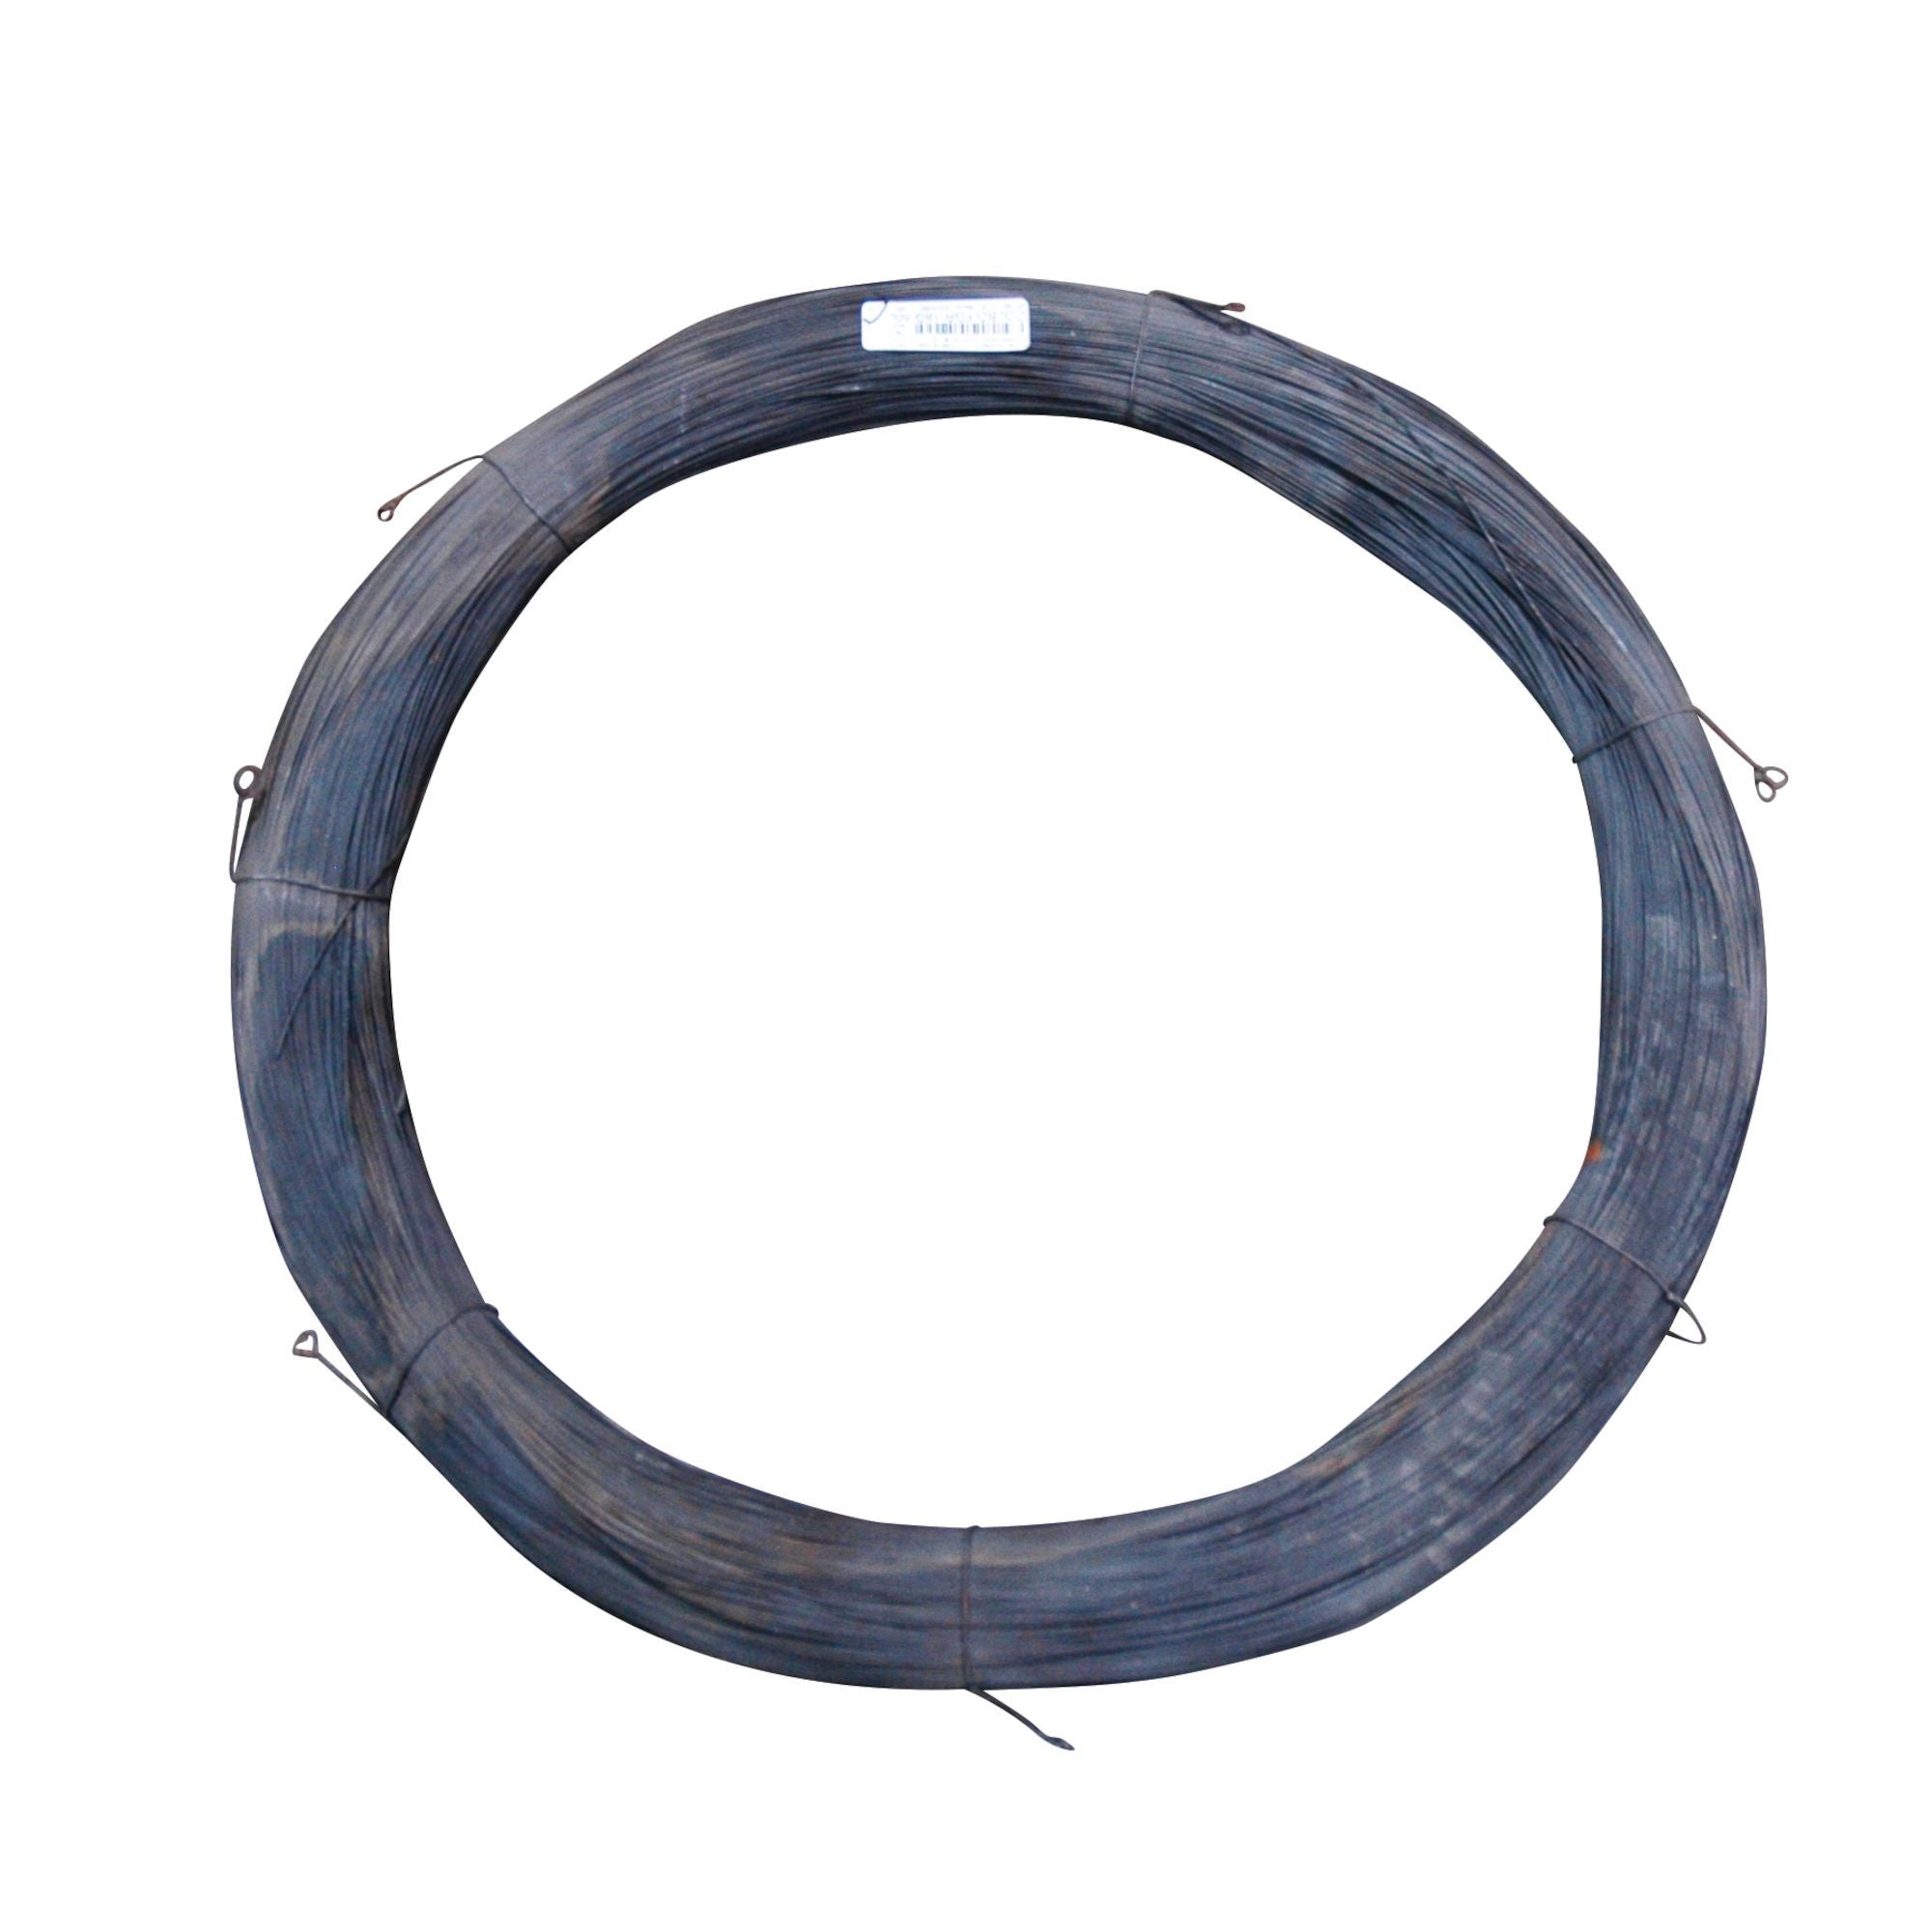 RANGEMASTER - Annealed merchant wire, black (10 lb) 